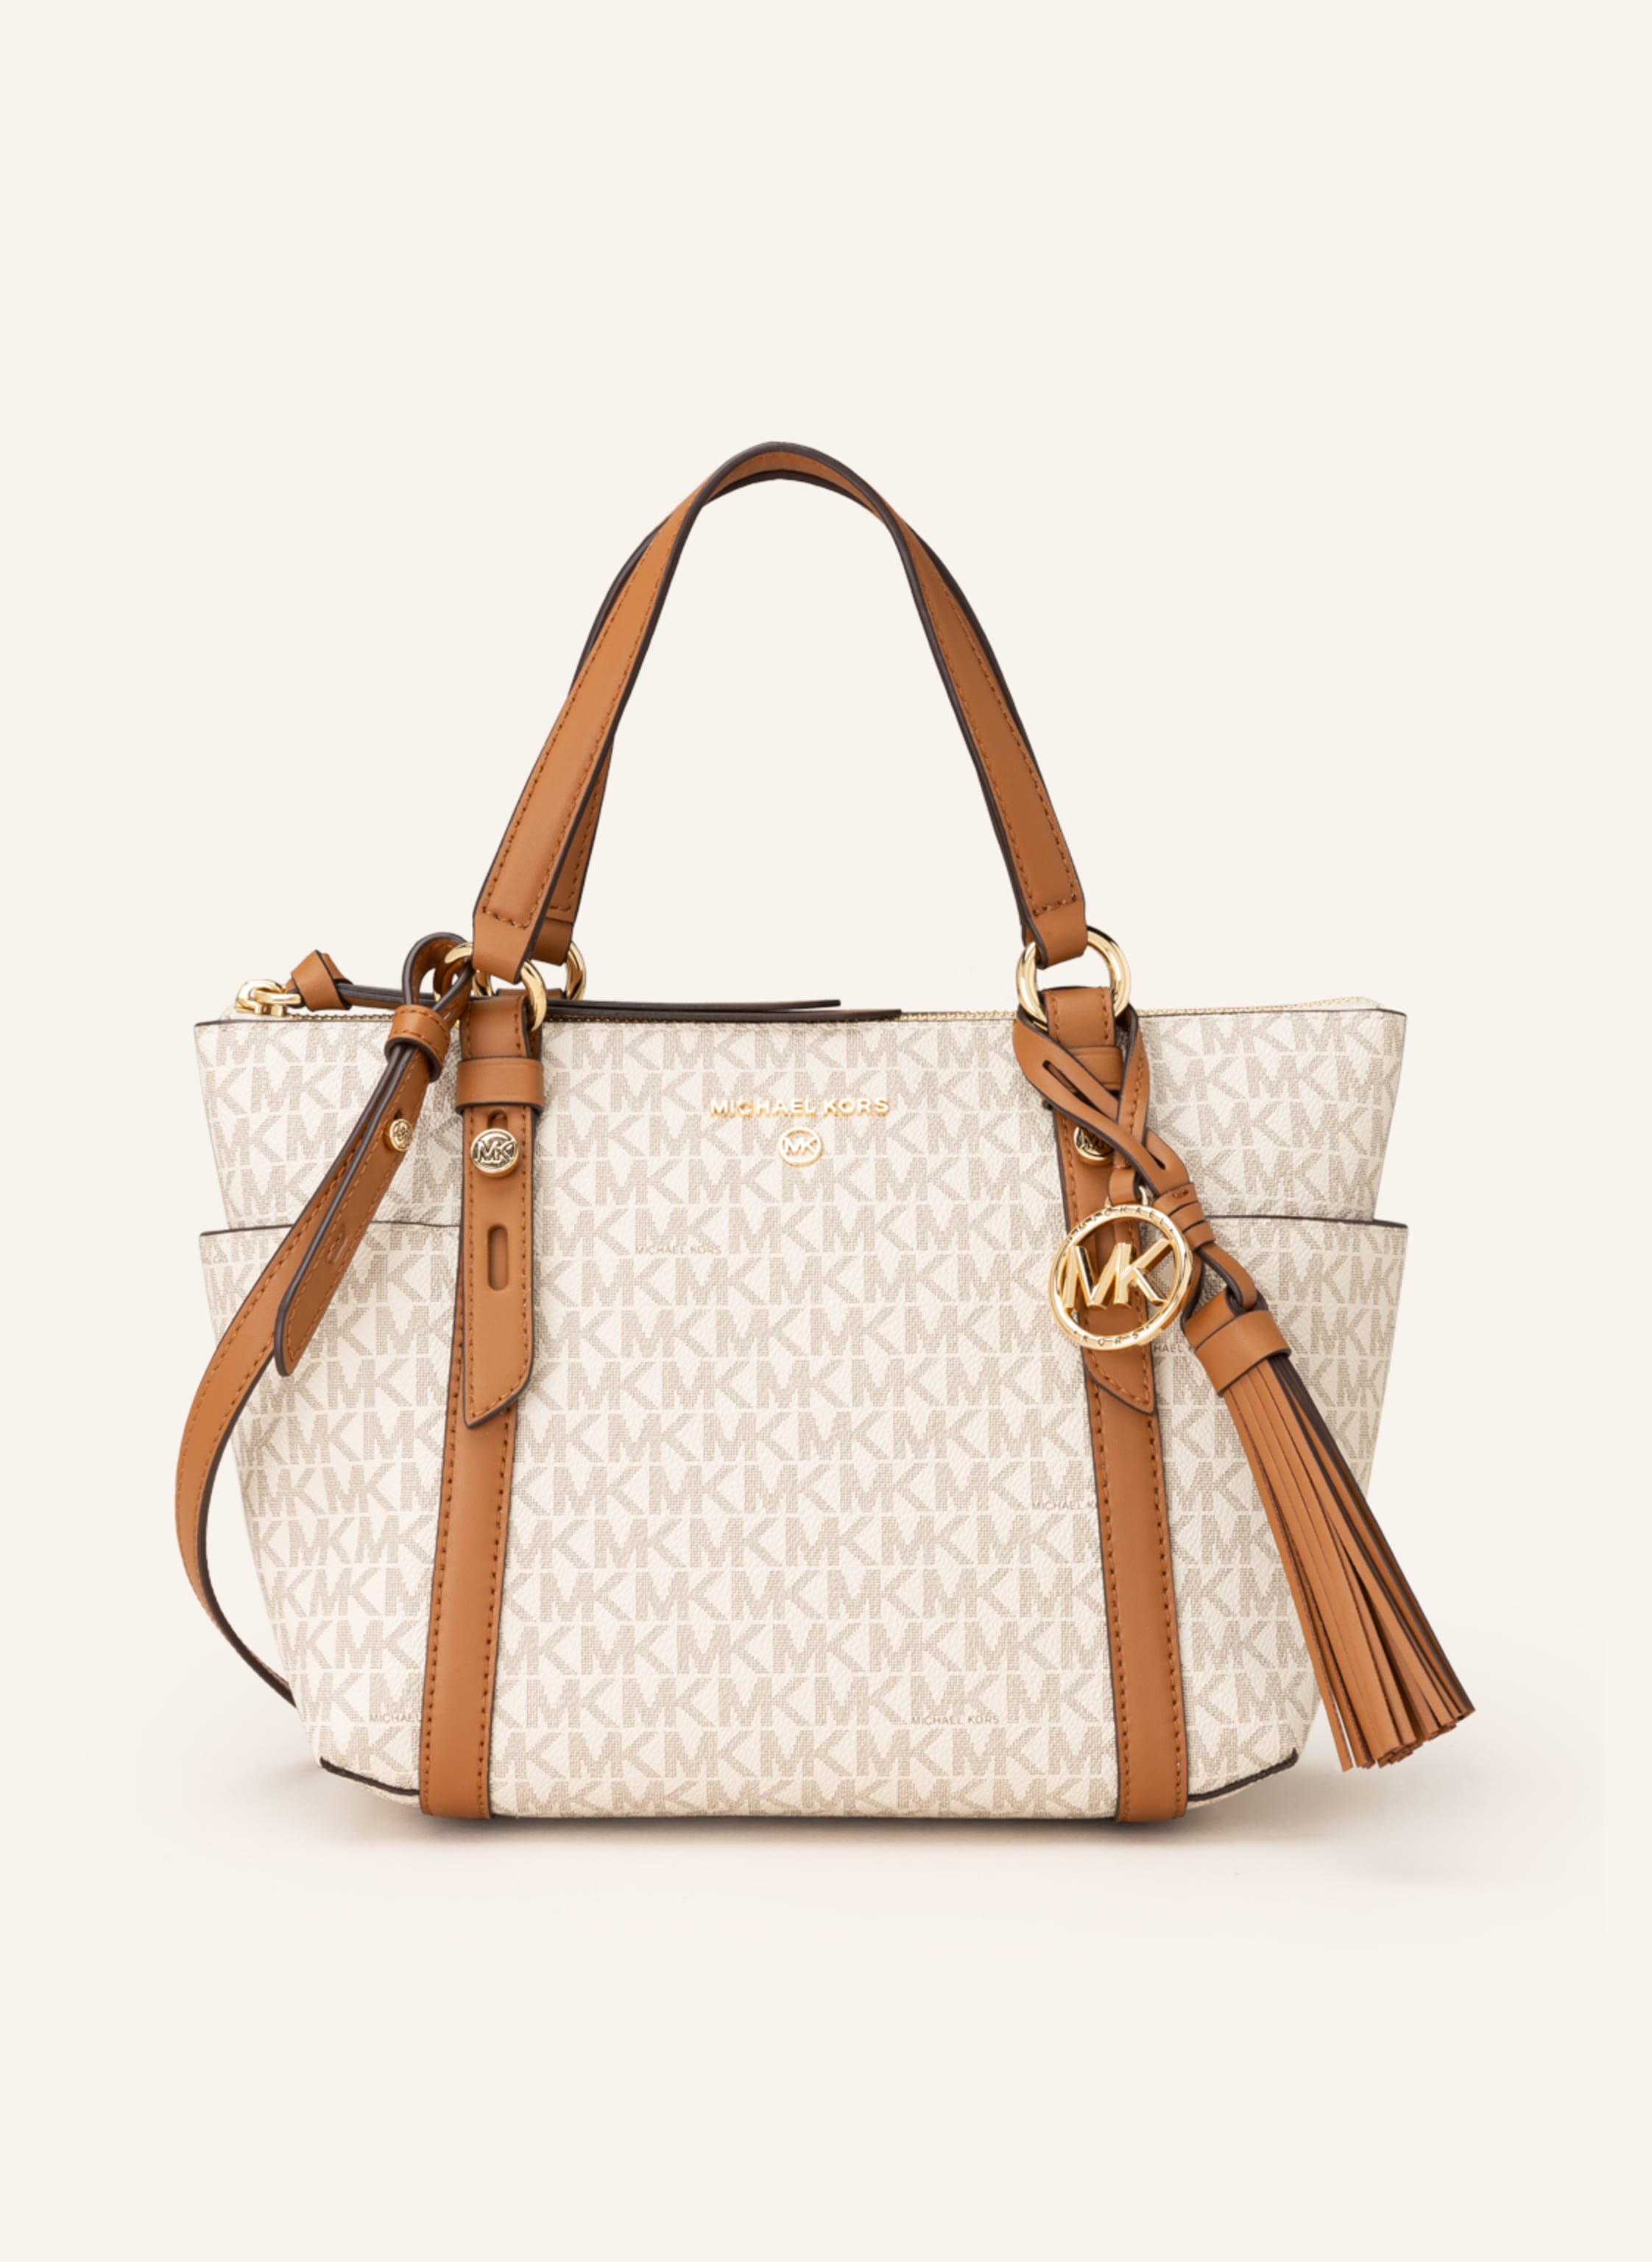 MICHAEL KORS Handbag in 149 vanilla/acorn | Breuninger